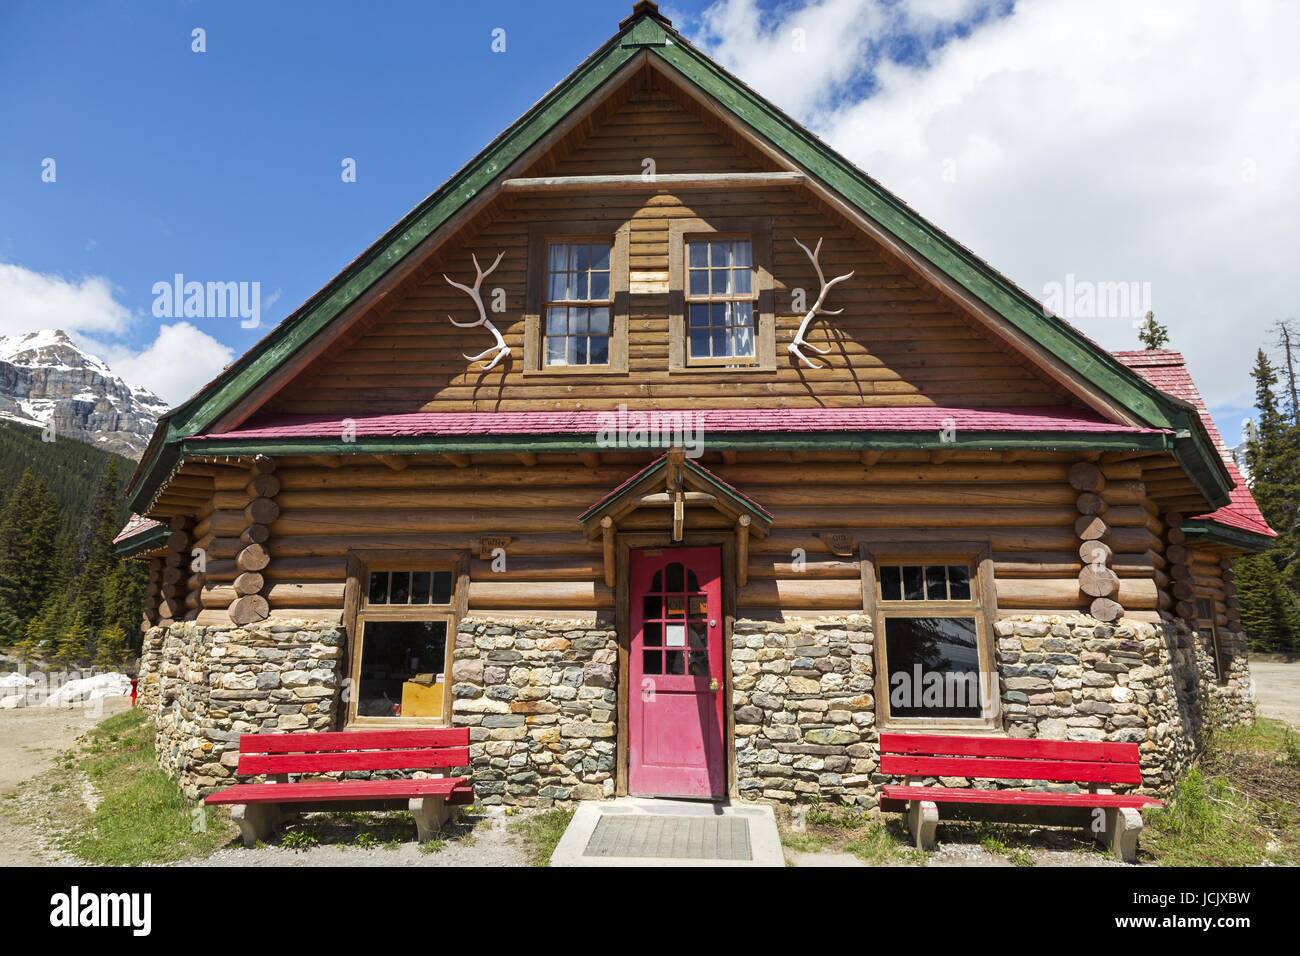 Historic Num-Ti-Jah Mountain Lodge Trading Post façade extérieure vue de face sur Icefields Parkway Parc national Banff montagnes Rocheuses Alberta Canada Banque D'Images